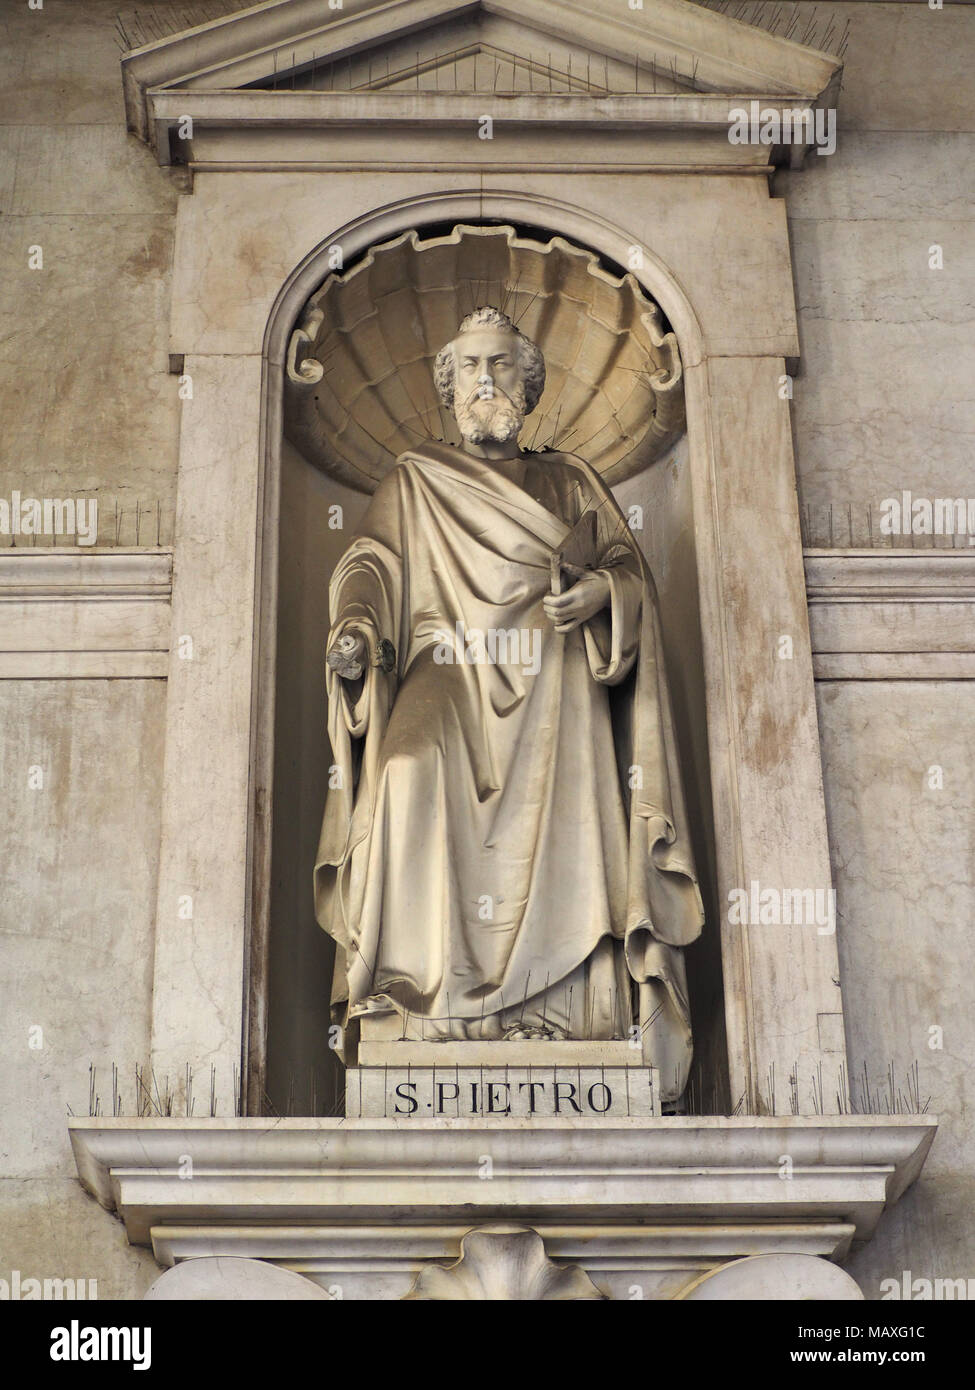 TURIN, ITALIE - CIRCA JANVIER 2018 : statue de Saint Pierre (San Pietro en italien) à l'extérieur de l'église Santissima Annunziata Banque D'Images